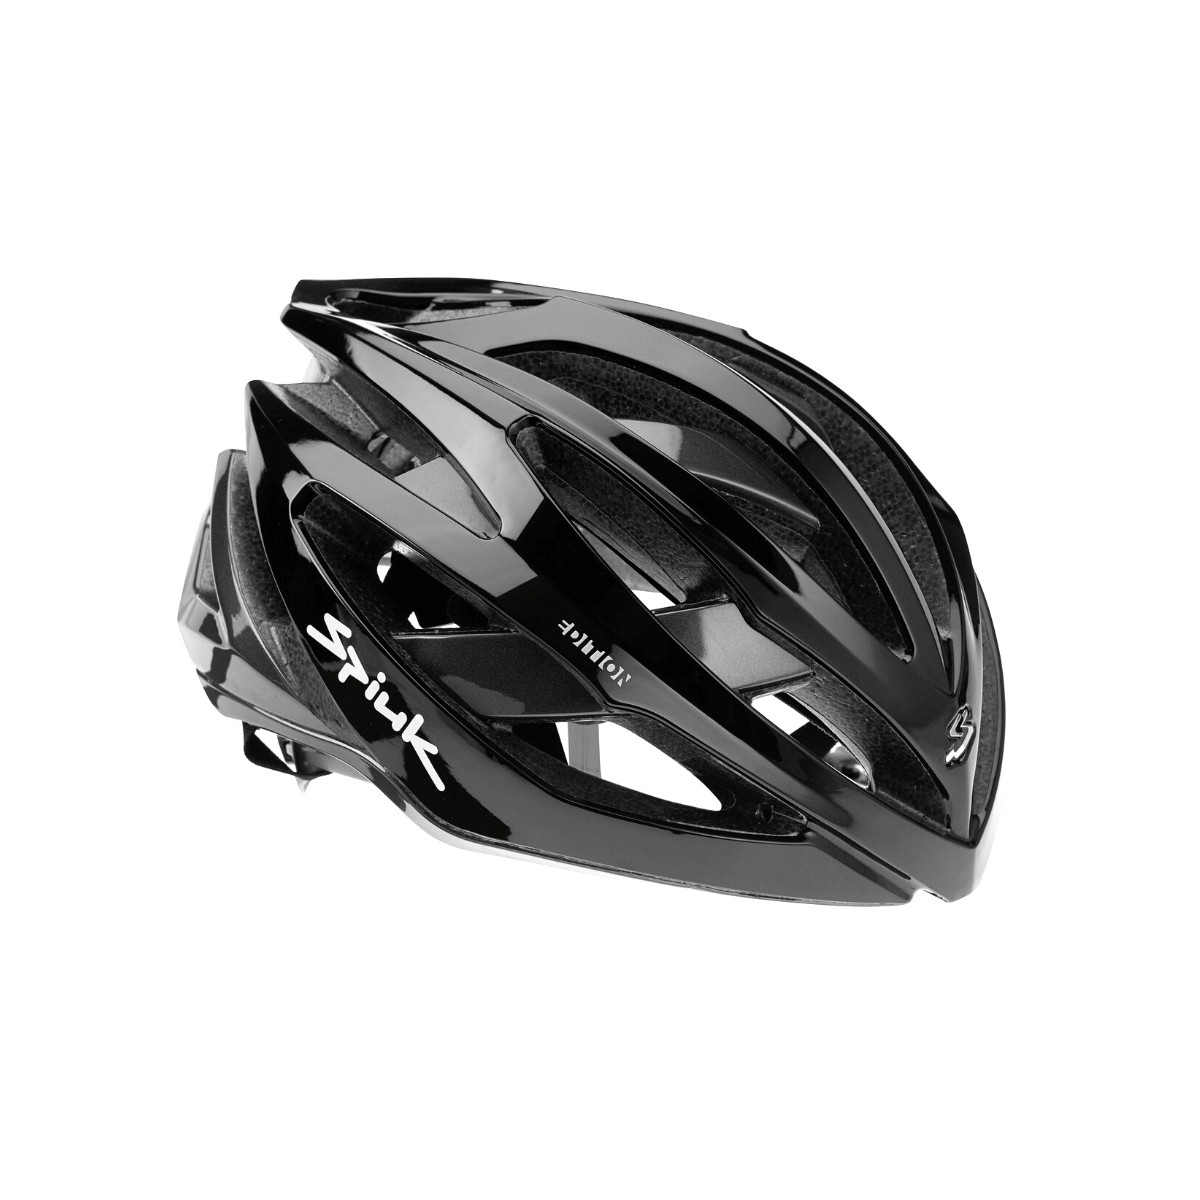 Spiuk Adante Edition Helmet Black, Size M/L (53-61 cm)